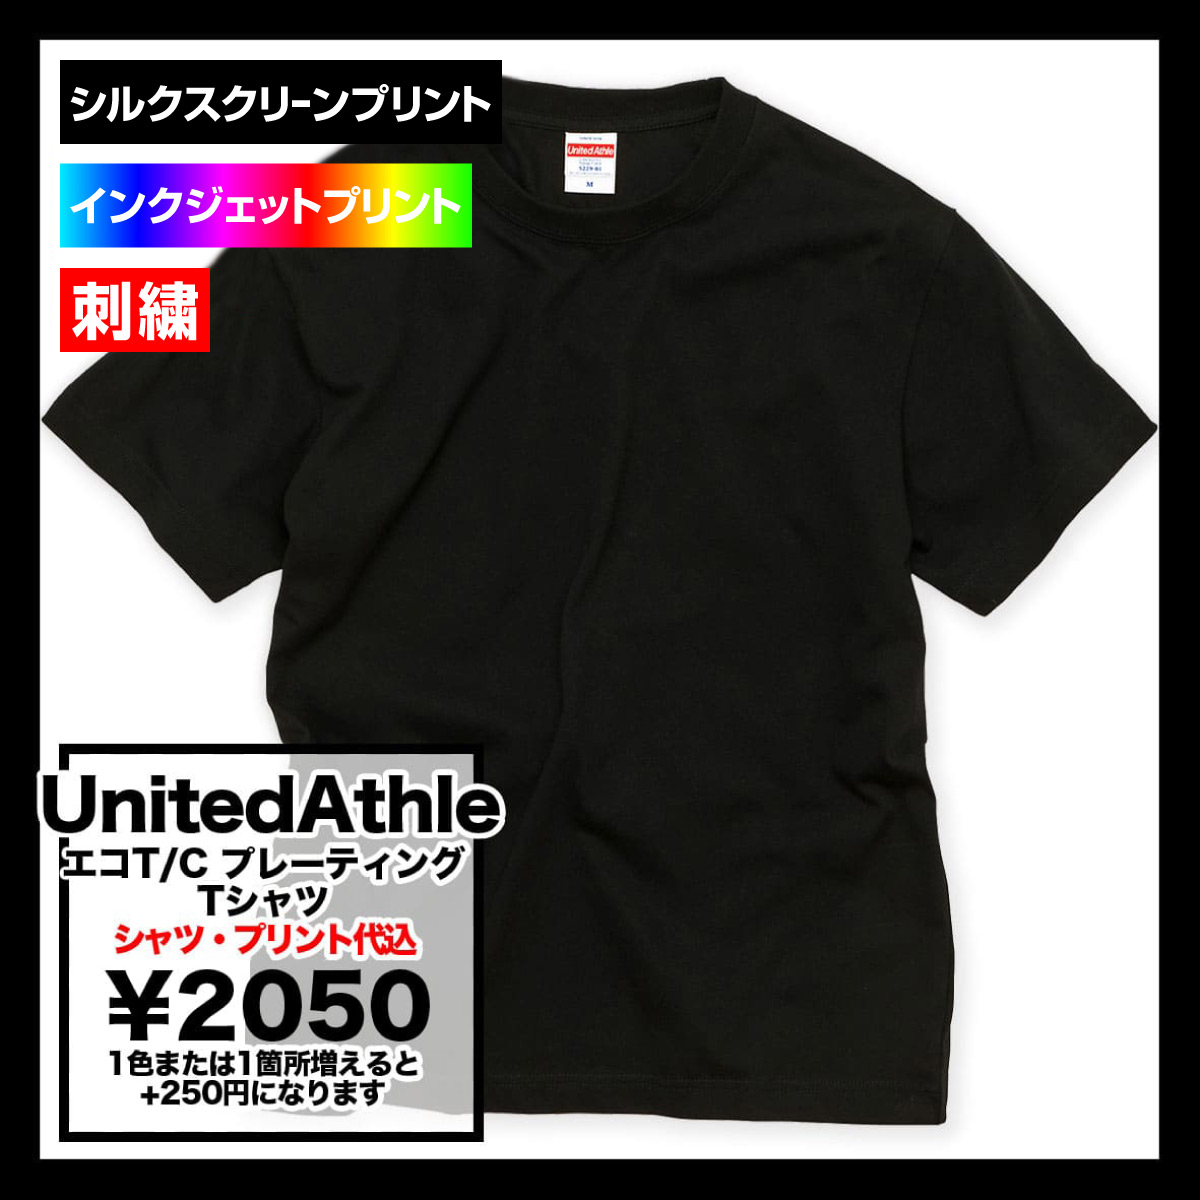 United Athle ユナイテッドアスレ 5.3 oz エコT/C プレーティング Tシャツ (品番5229-01)